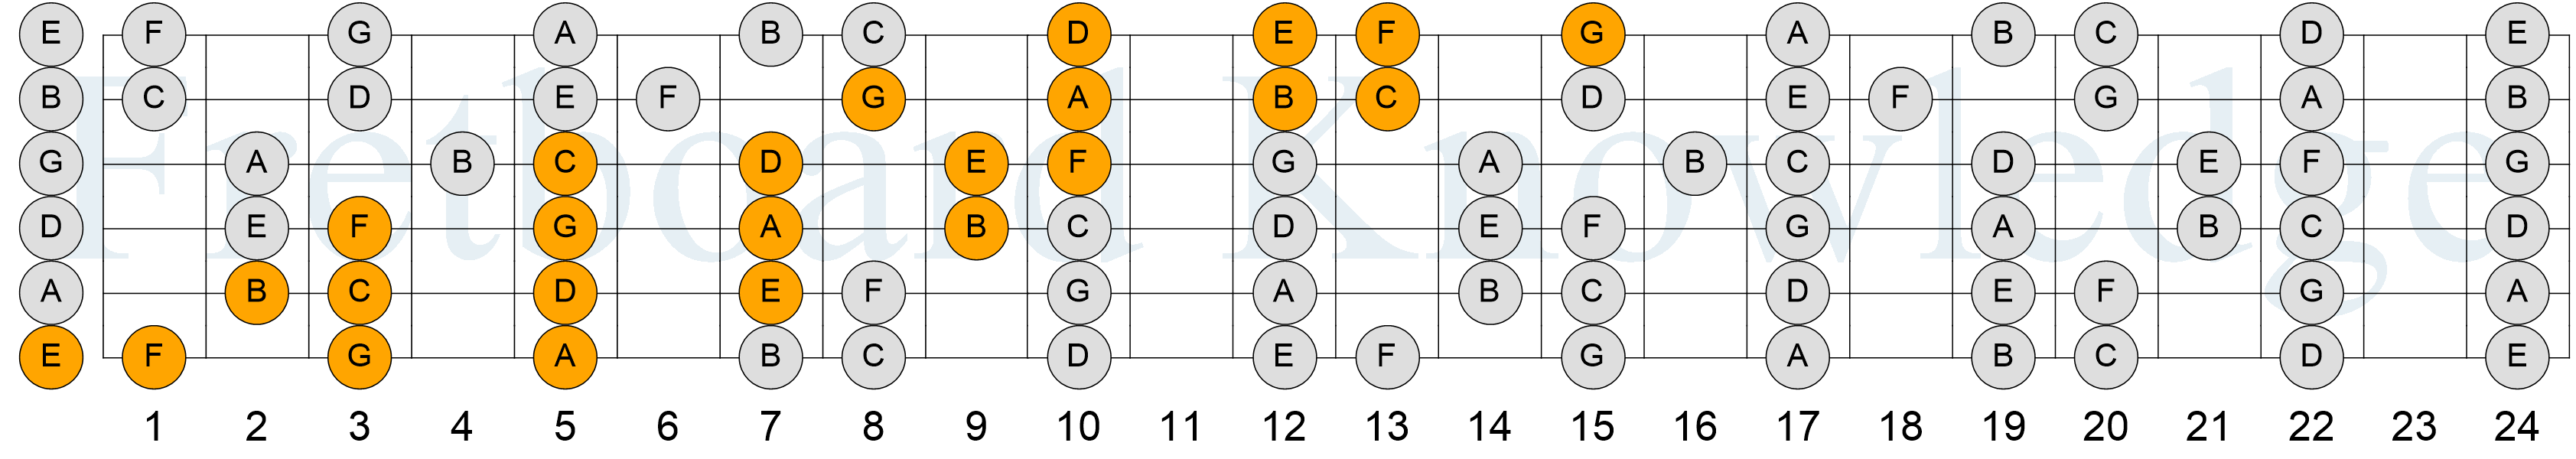 C Major Scale - 4NPS - Pattern 1